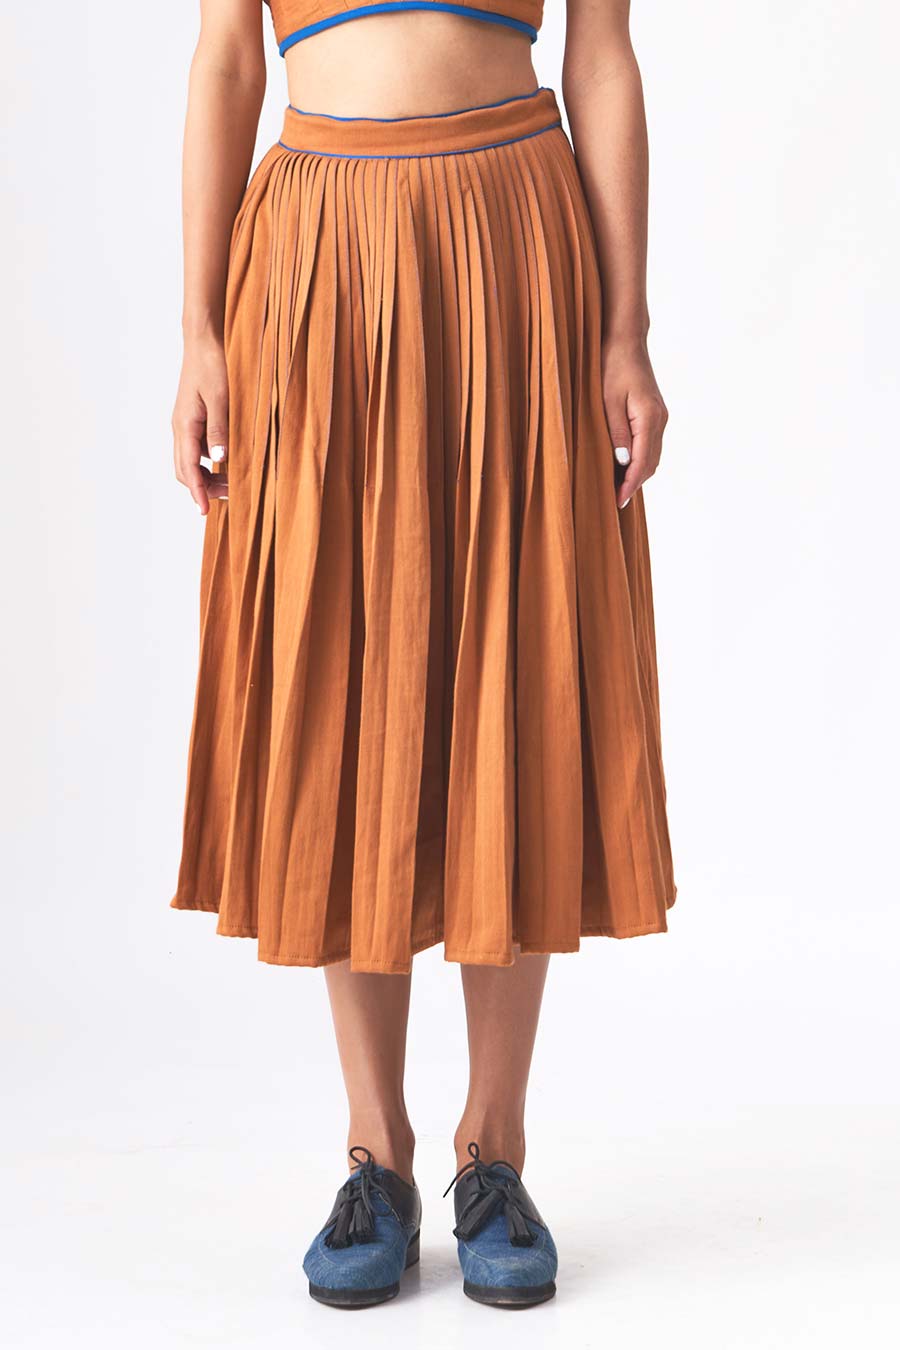 DEBORAH - Brown Handloom Denim Skirt